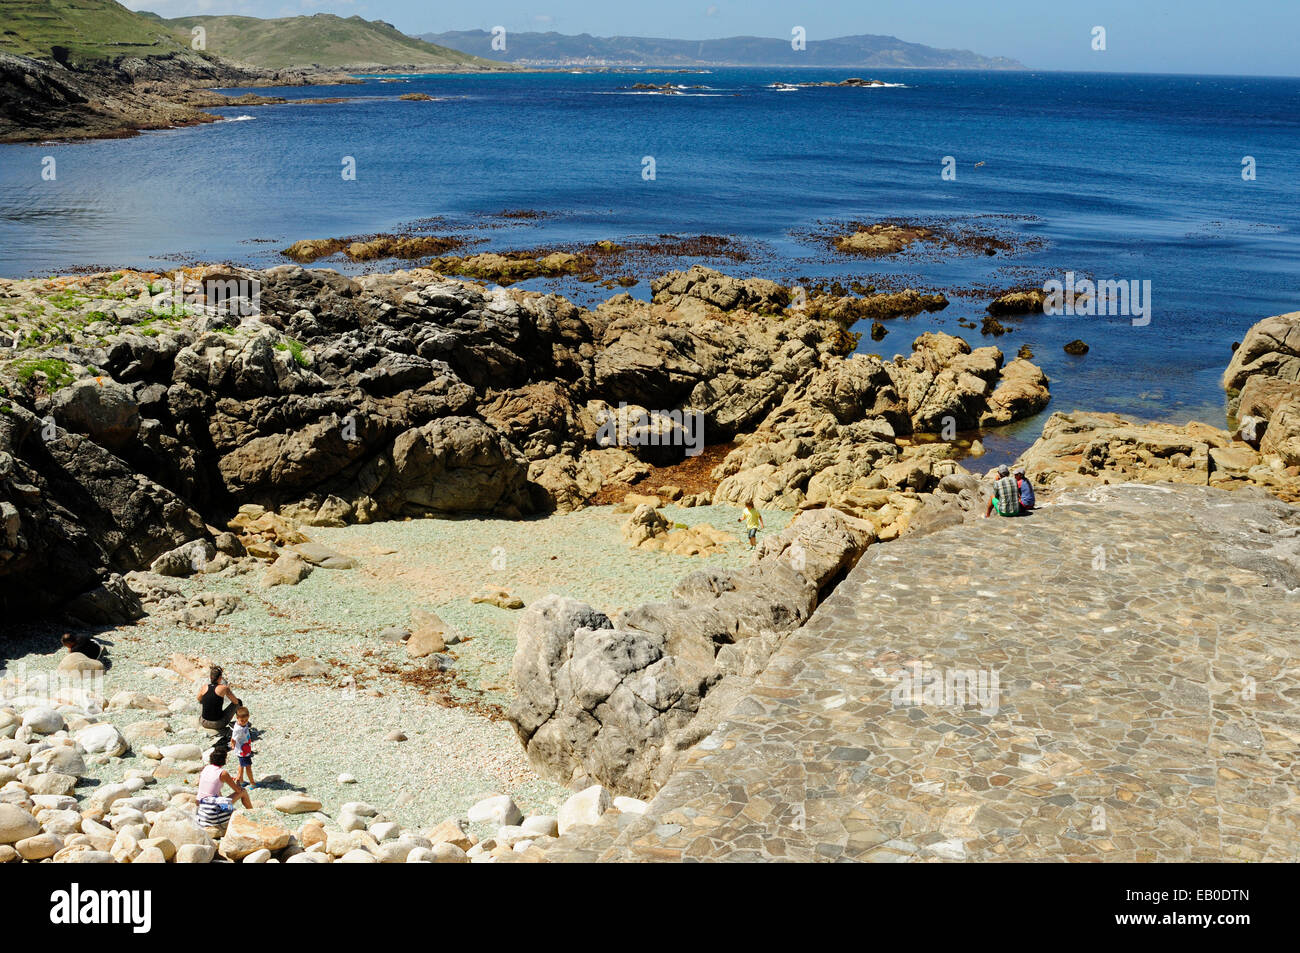 The Beach of crystals. Laxe, Coruña, Galicia, Spain Stock Photo